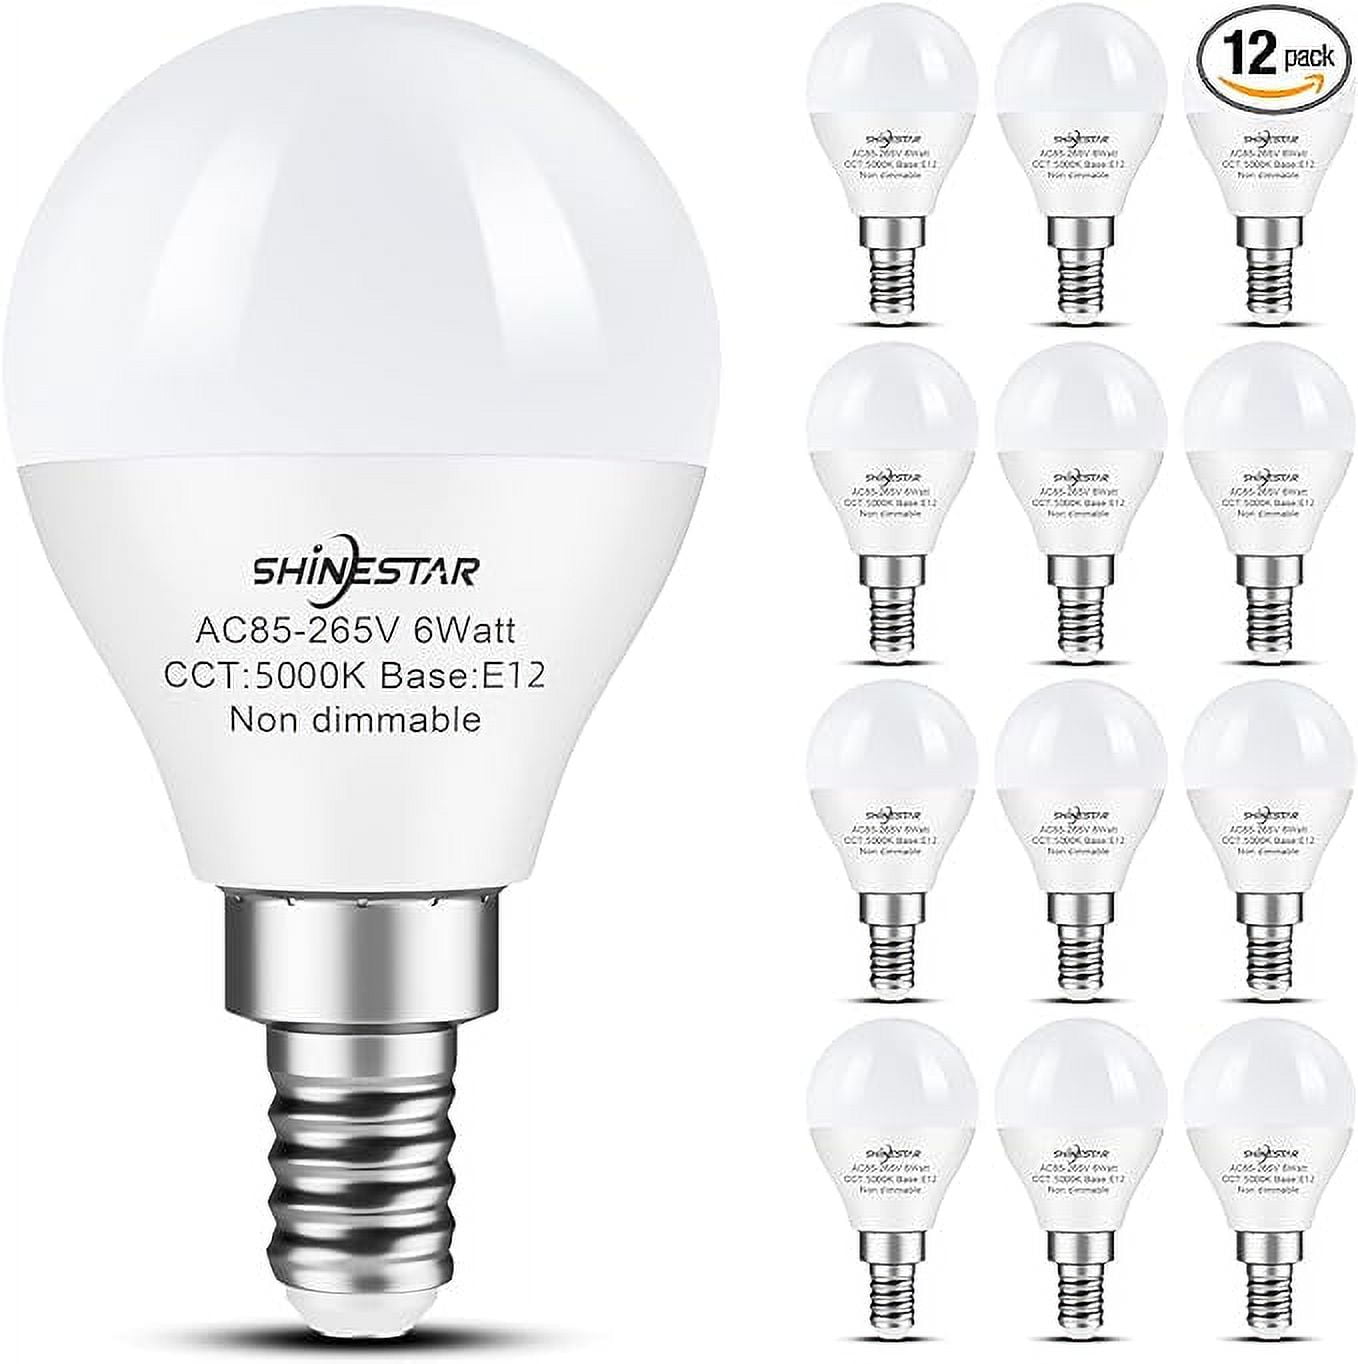 SHINESTAR 12-Pack Ceiling Fan Light Bulbs, E12 LED Bulb, Daylight 5000K,  120v 60w Equivalent, Candelabra Small Base, Non-Dimmable